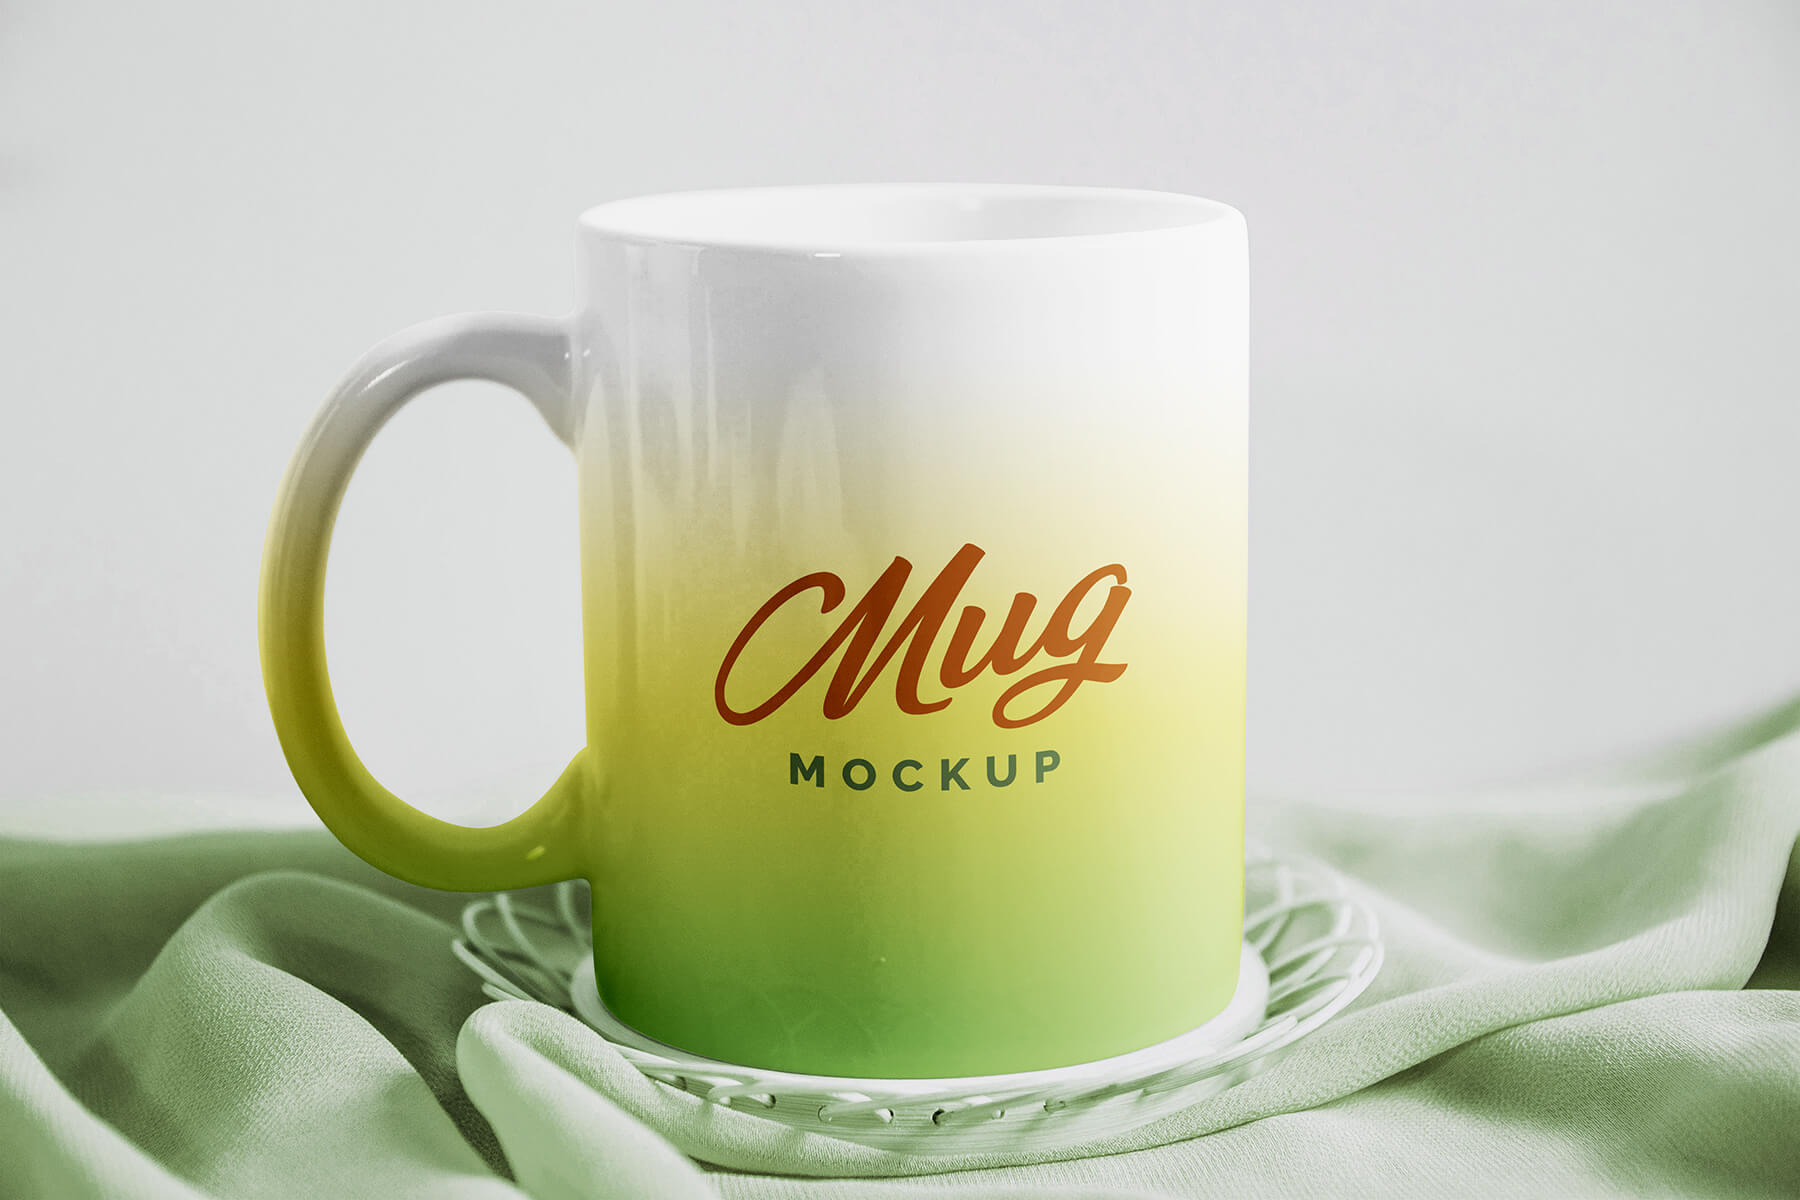 Free Ceramic Mug Mockup PSD